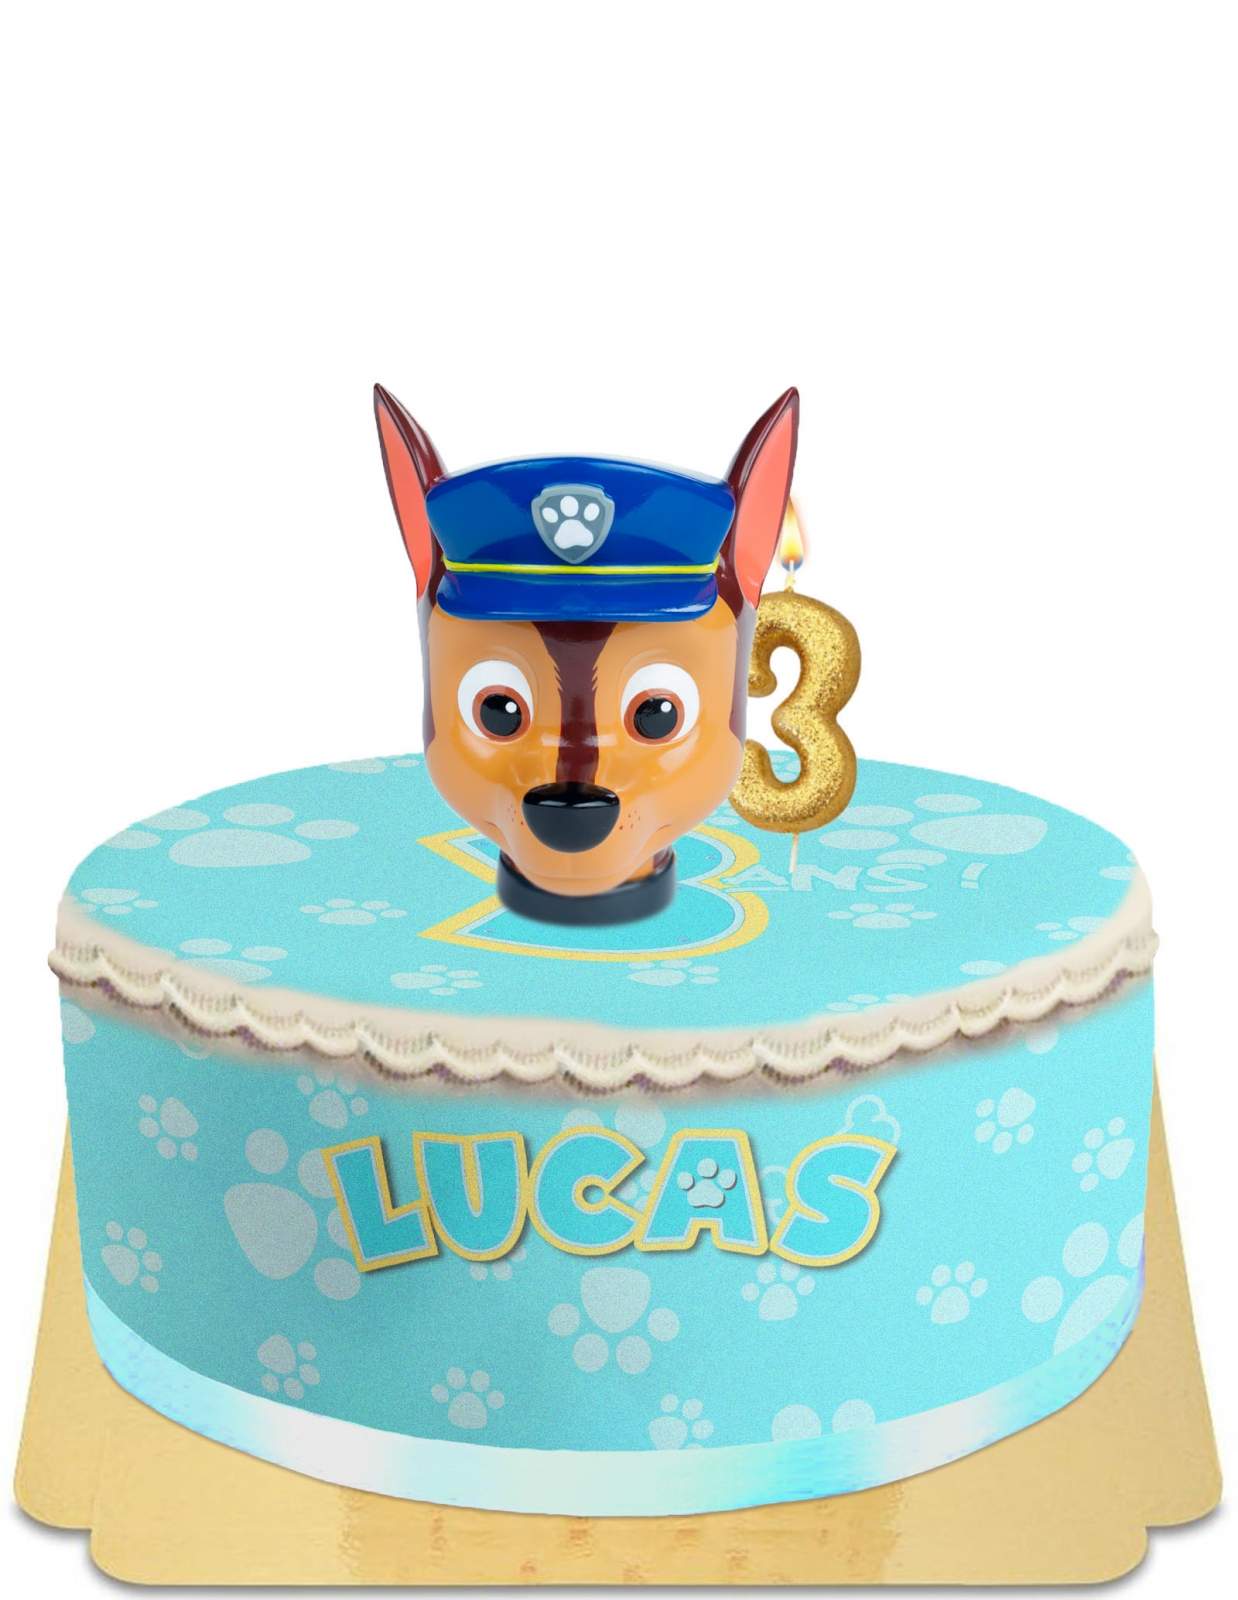 Commandez un super gâteau d'anniversaire personnalisé avec Chase, de la Pat  Patrouille en ligne